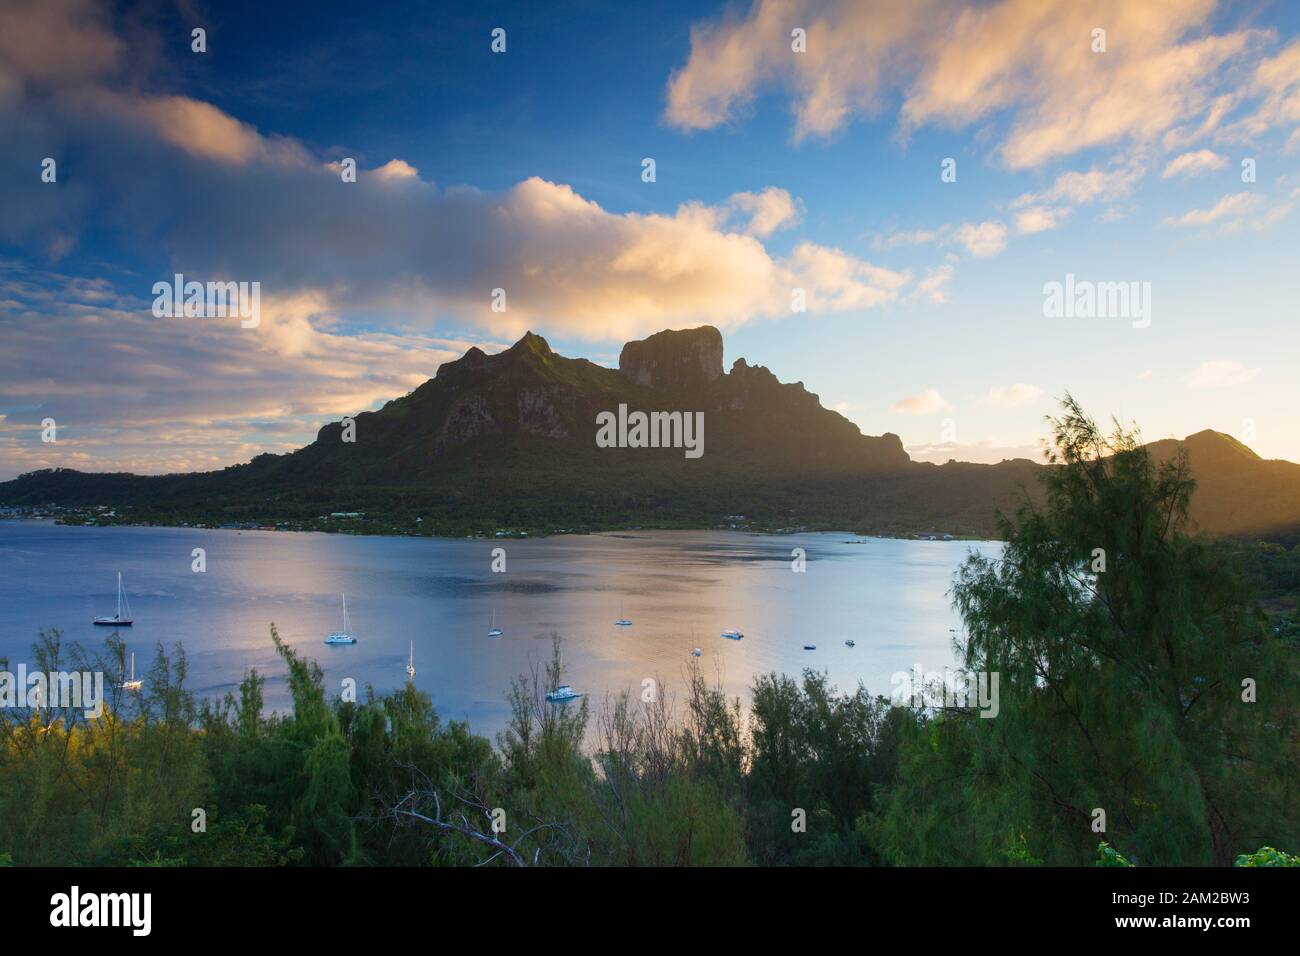 View of Mount Otemanu, Bora Bora, Society Islands, French Polynesia Stock Photo